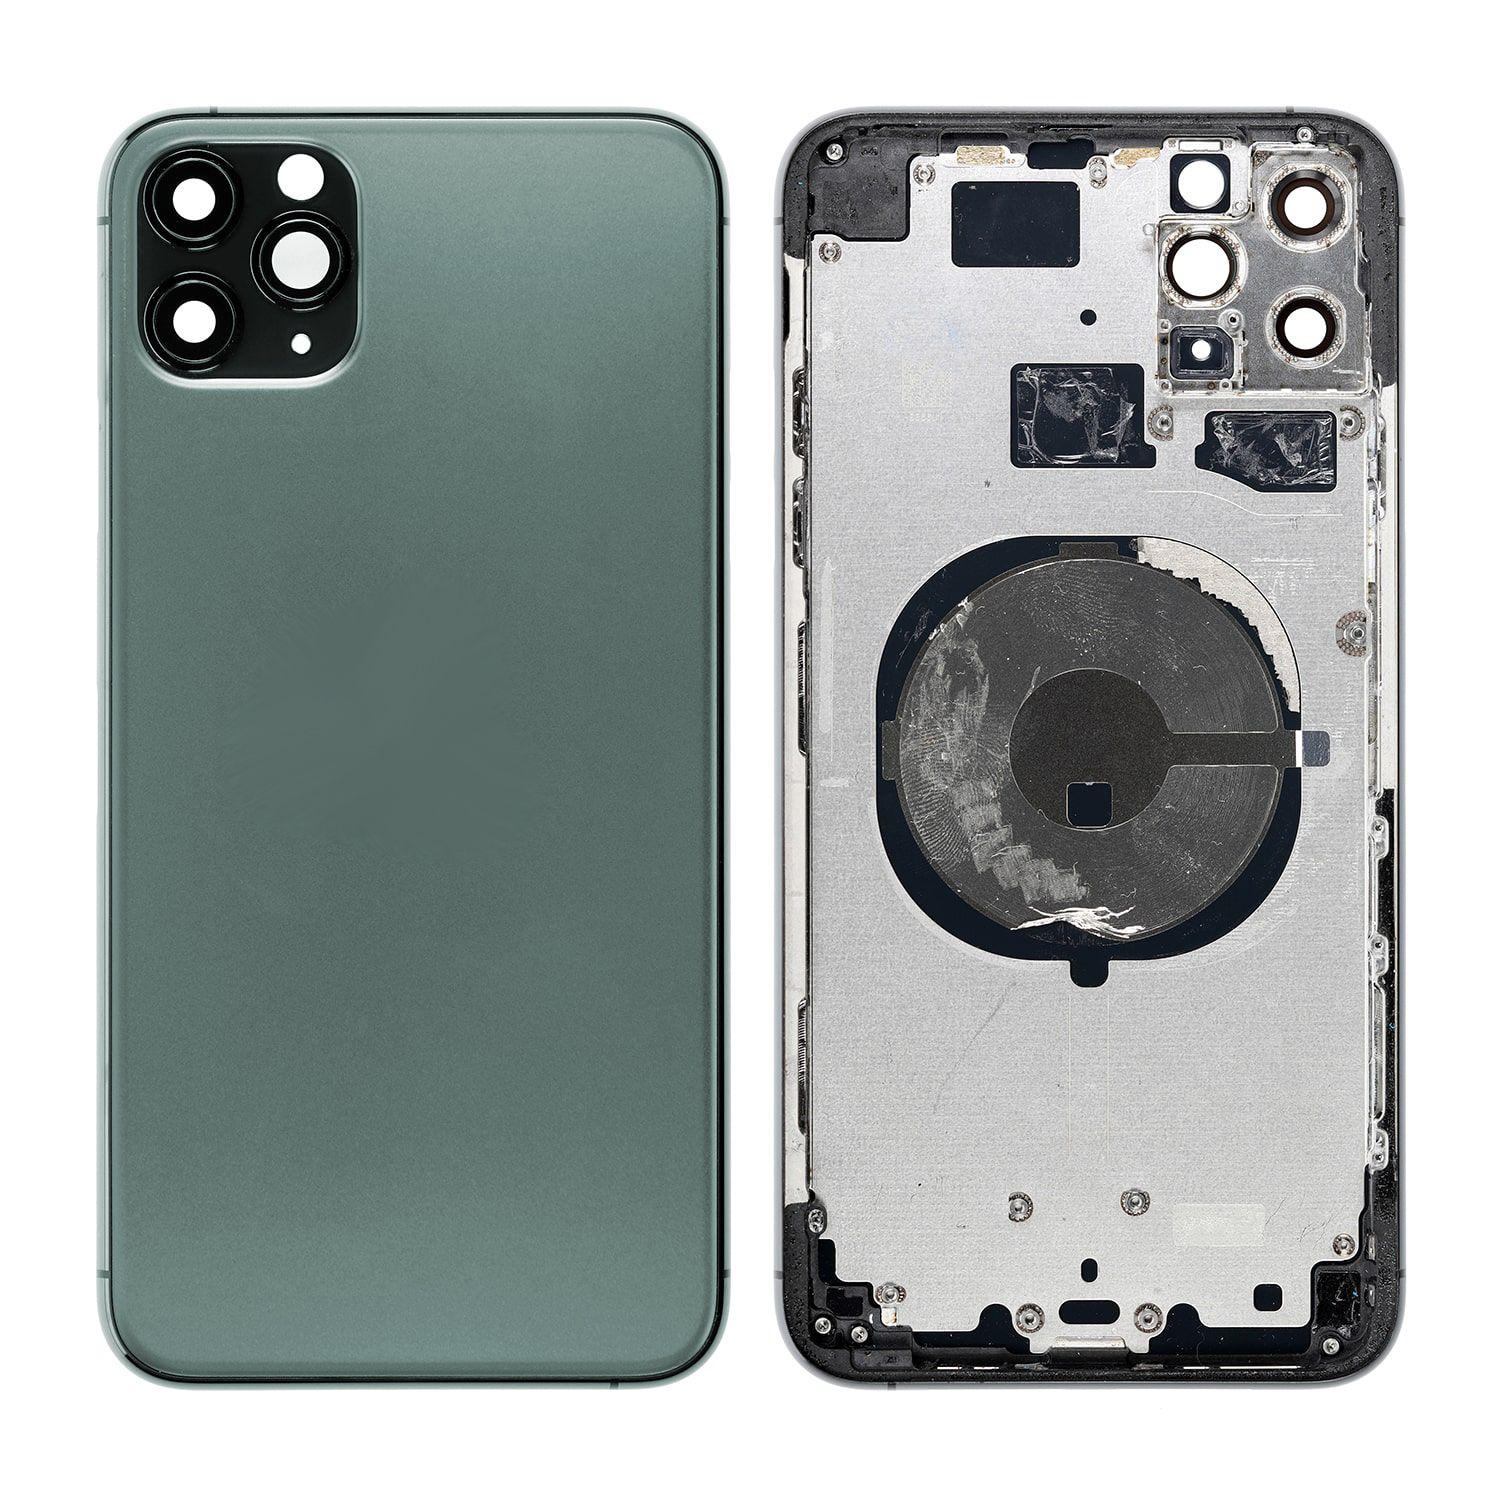 Korpus + zadní kryt iPhone 11 Pro Max zelený